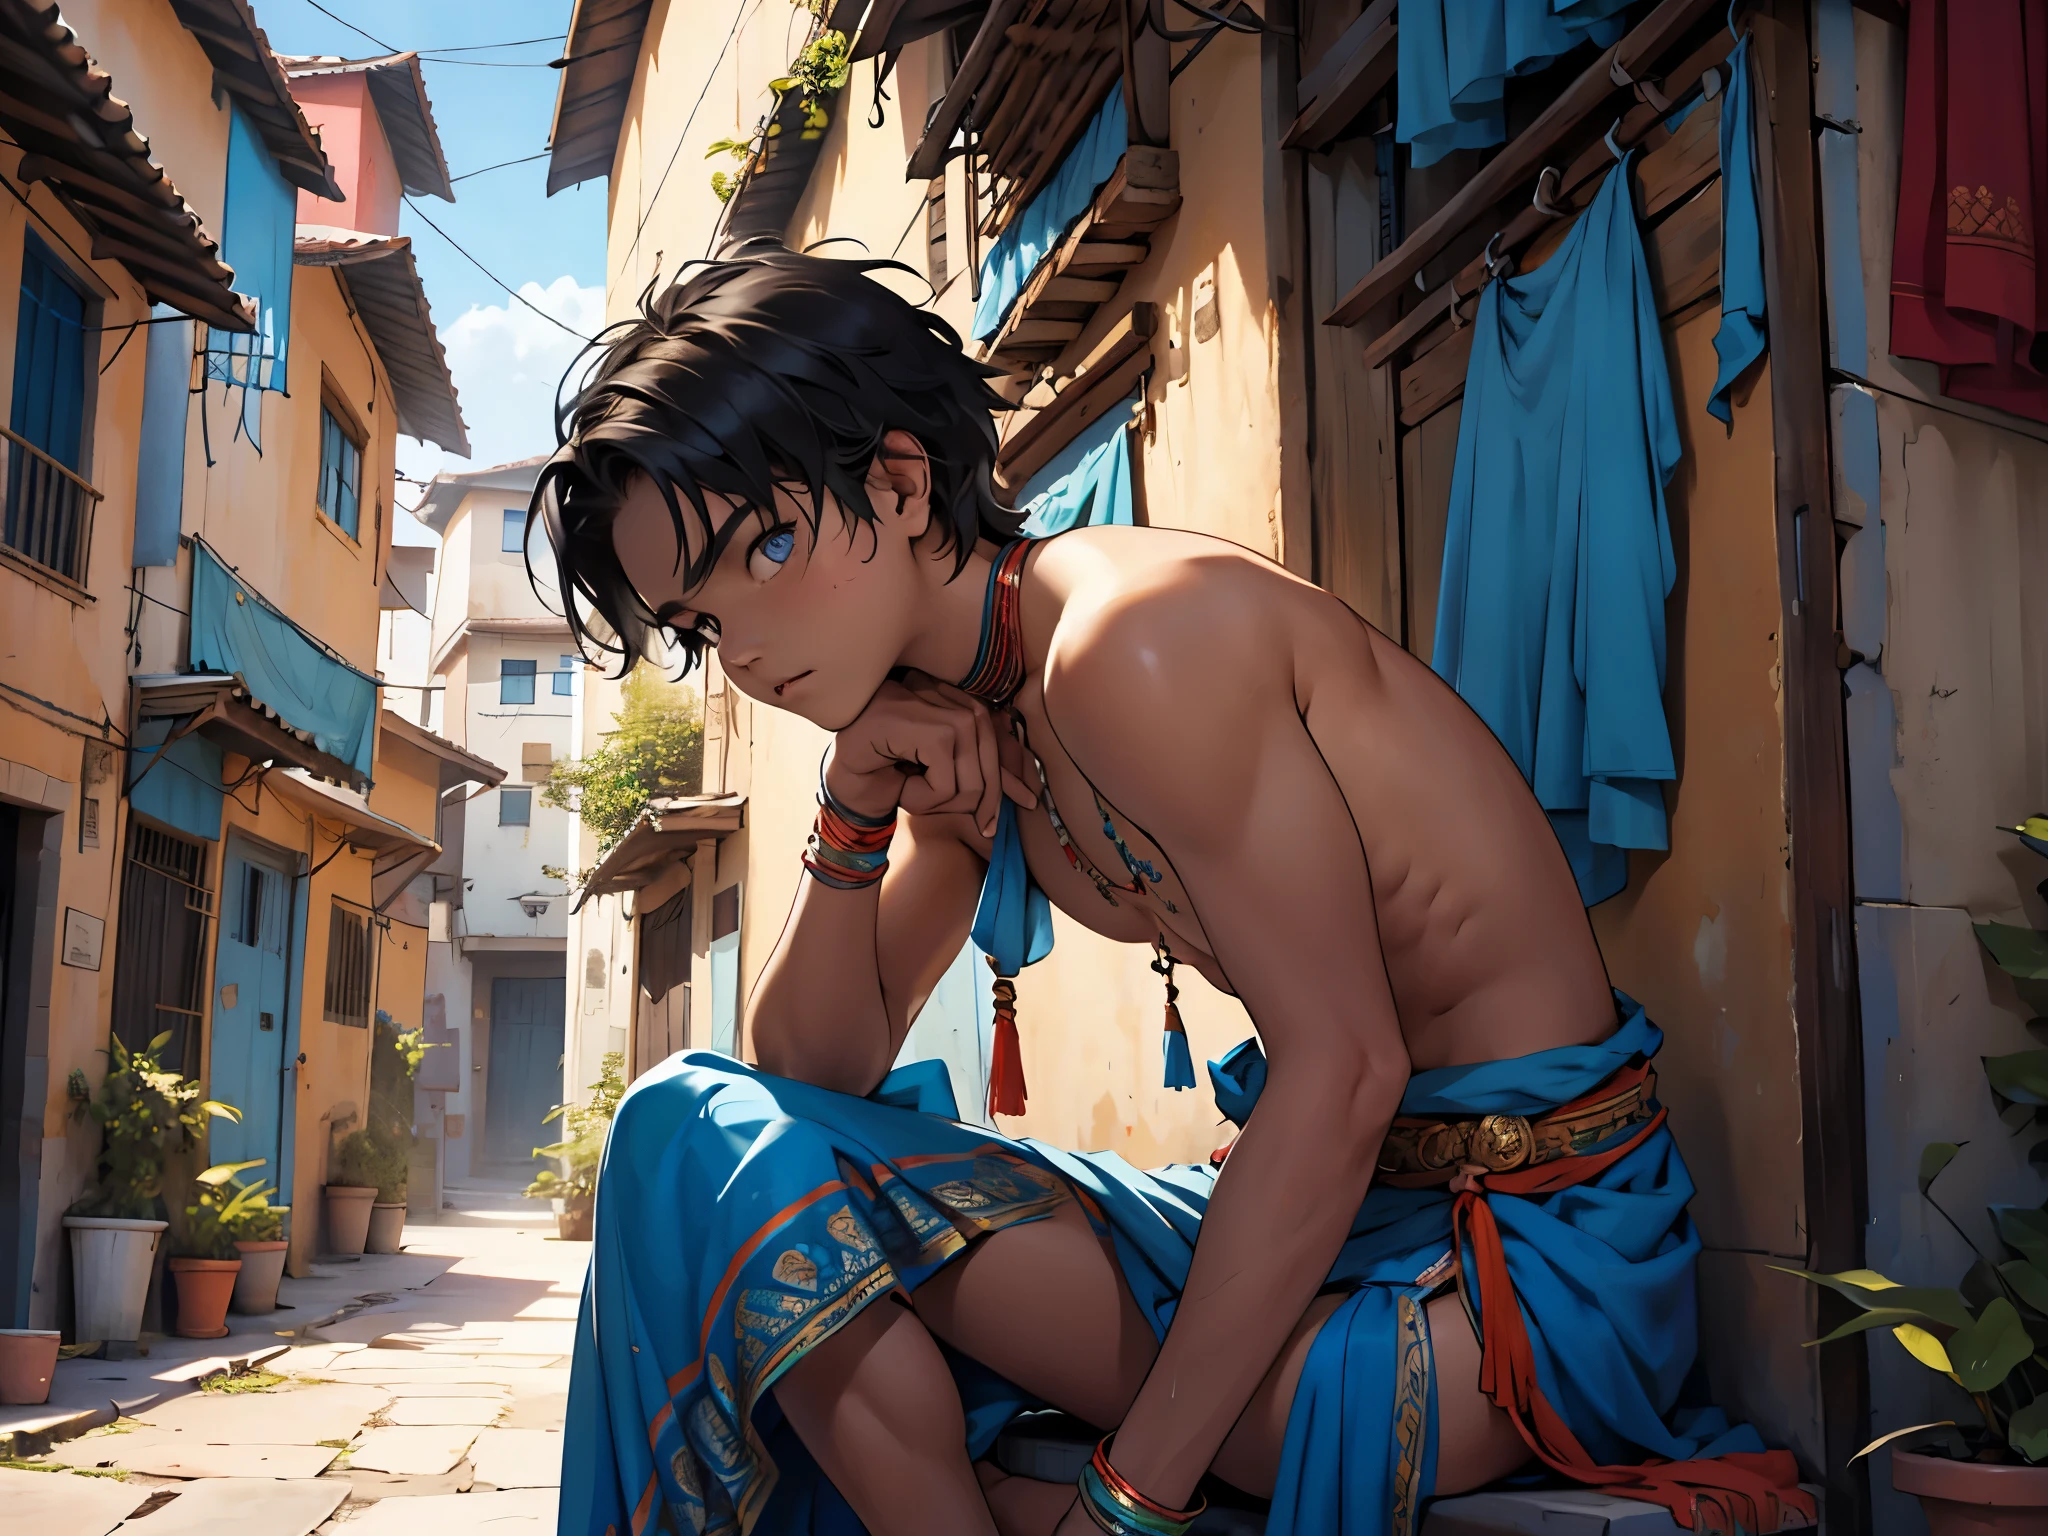 インドの部族の衣装を奇妙に着飾った16歳の少年がいる., 彼の髪は青い、目は青い、寄宿学校の屋上のテラスで街を眺めている彼は、下から見ていると当惑し、どこか悲しそうにしている。 